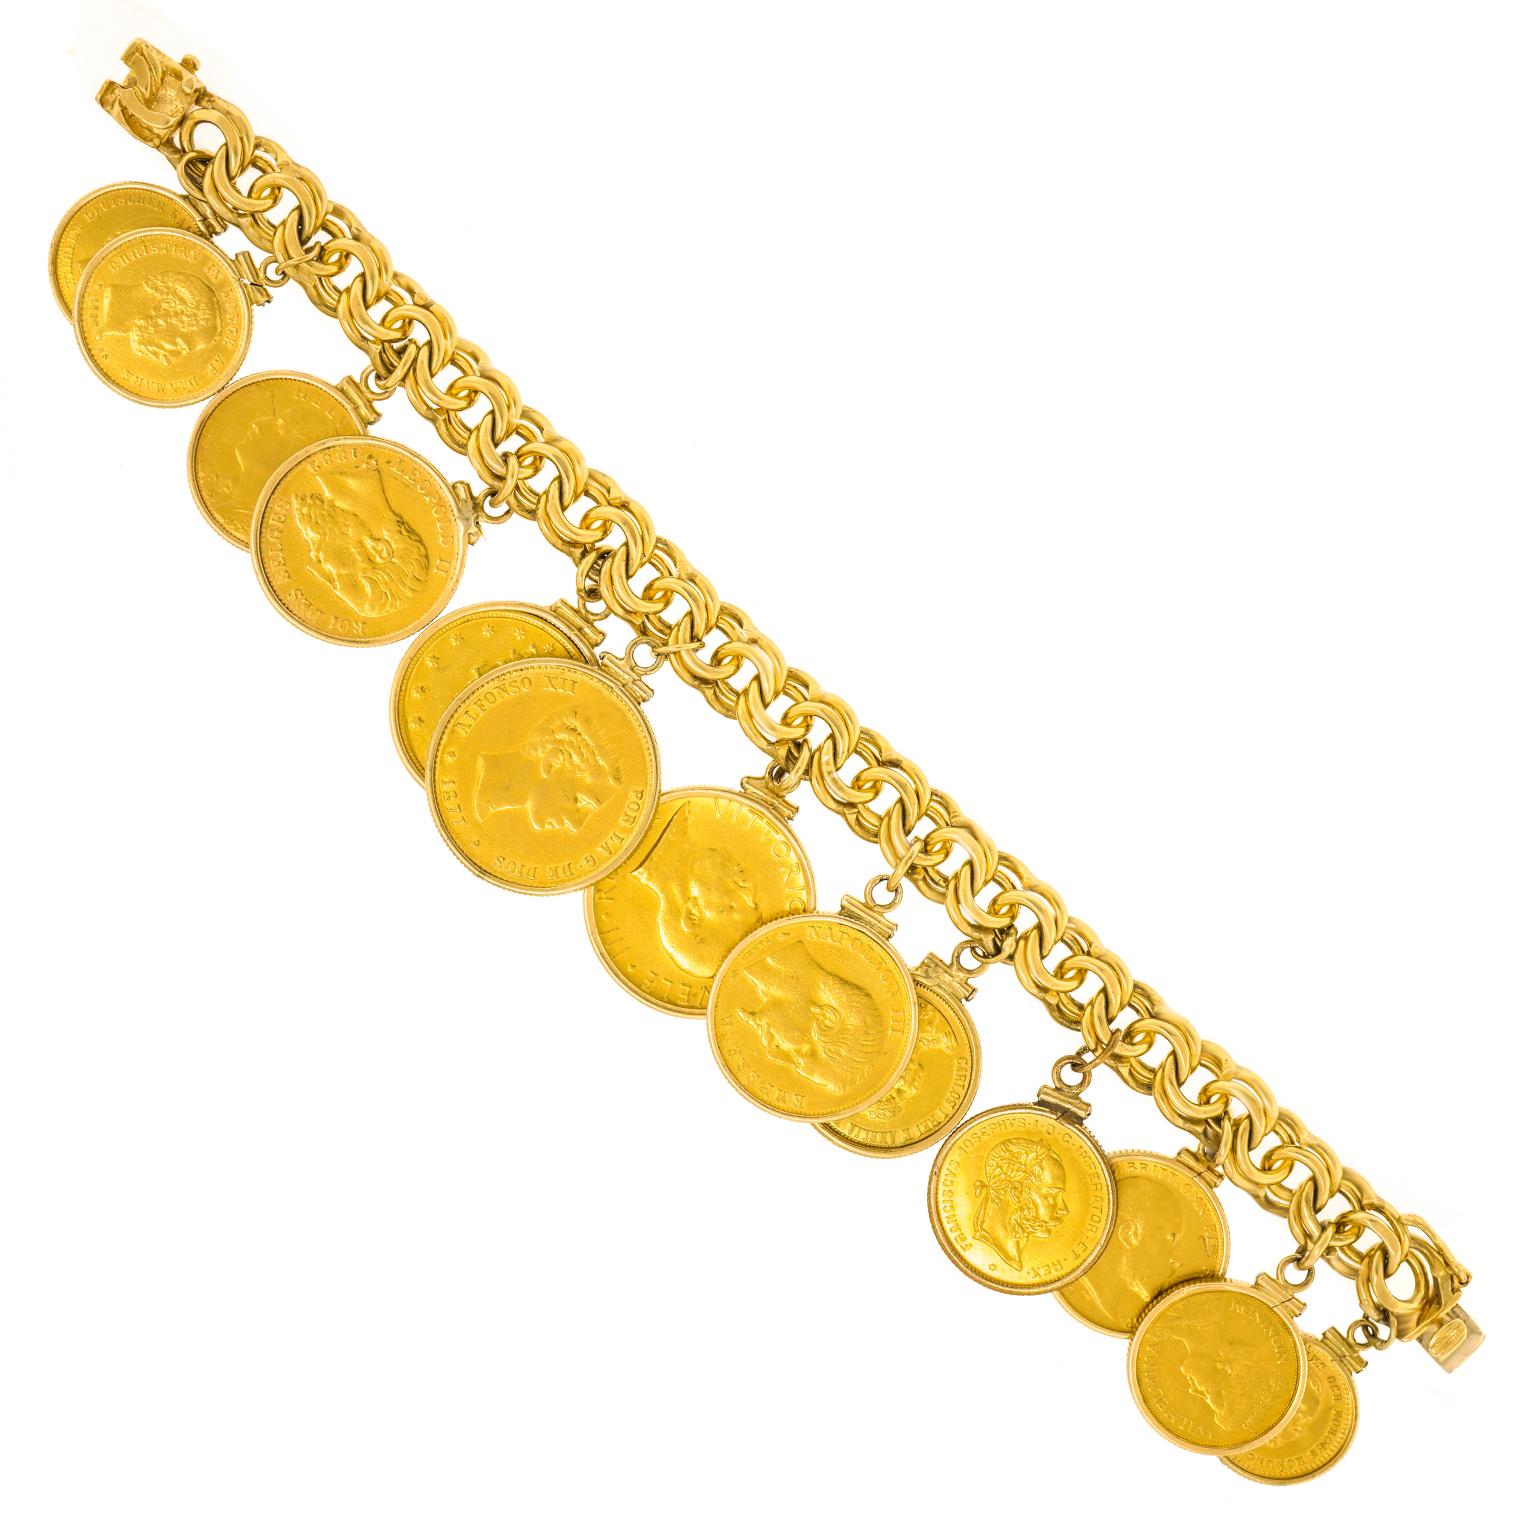 Spectacular Gold Coin Bracelet 4